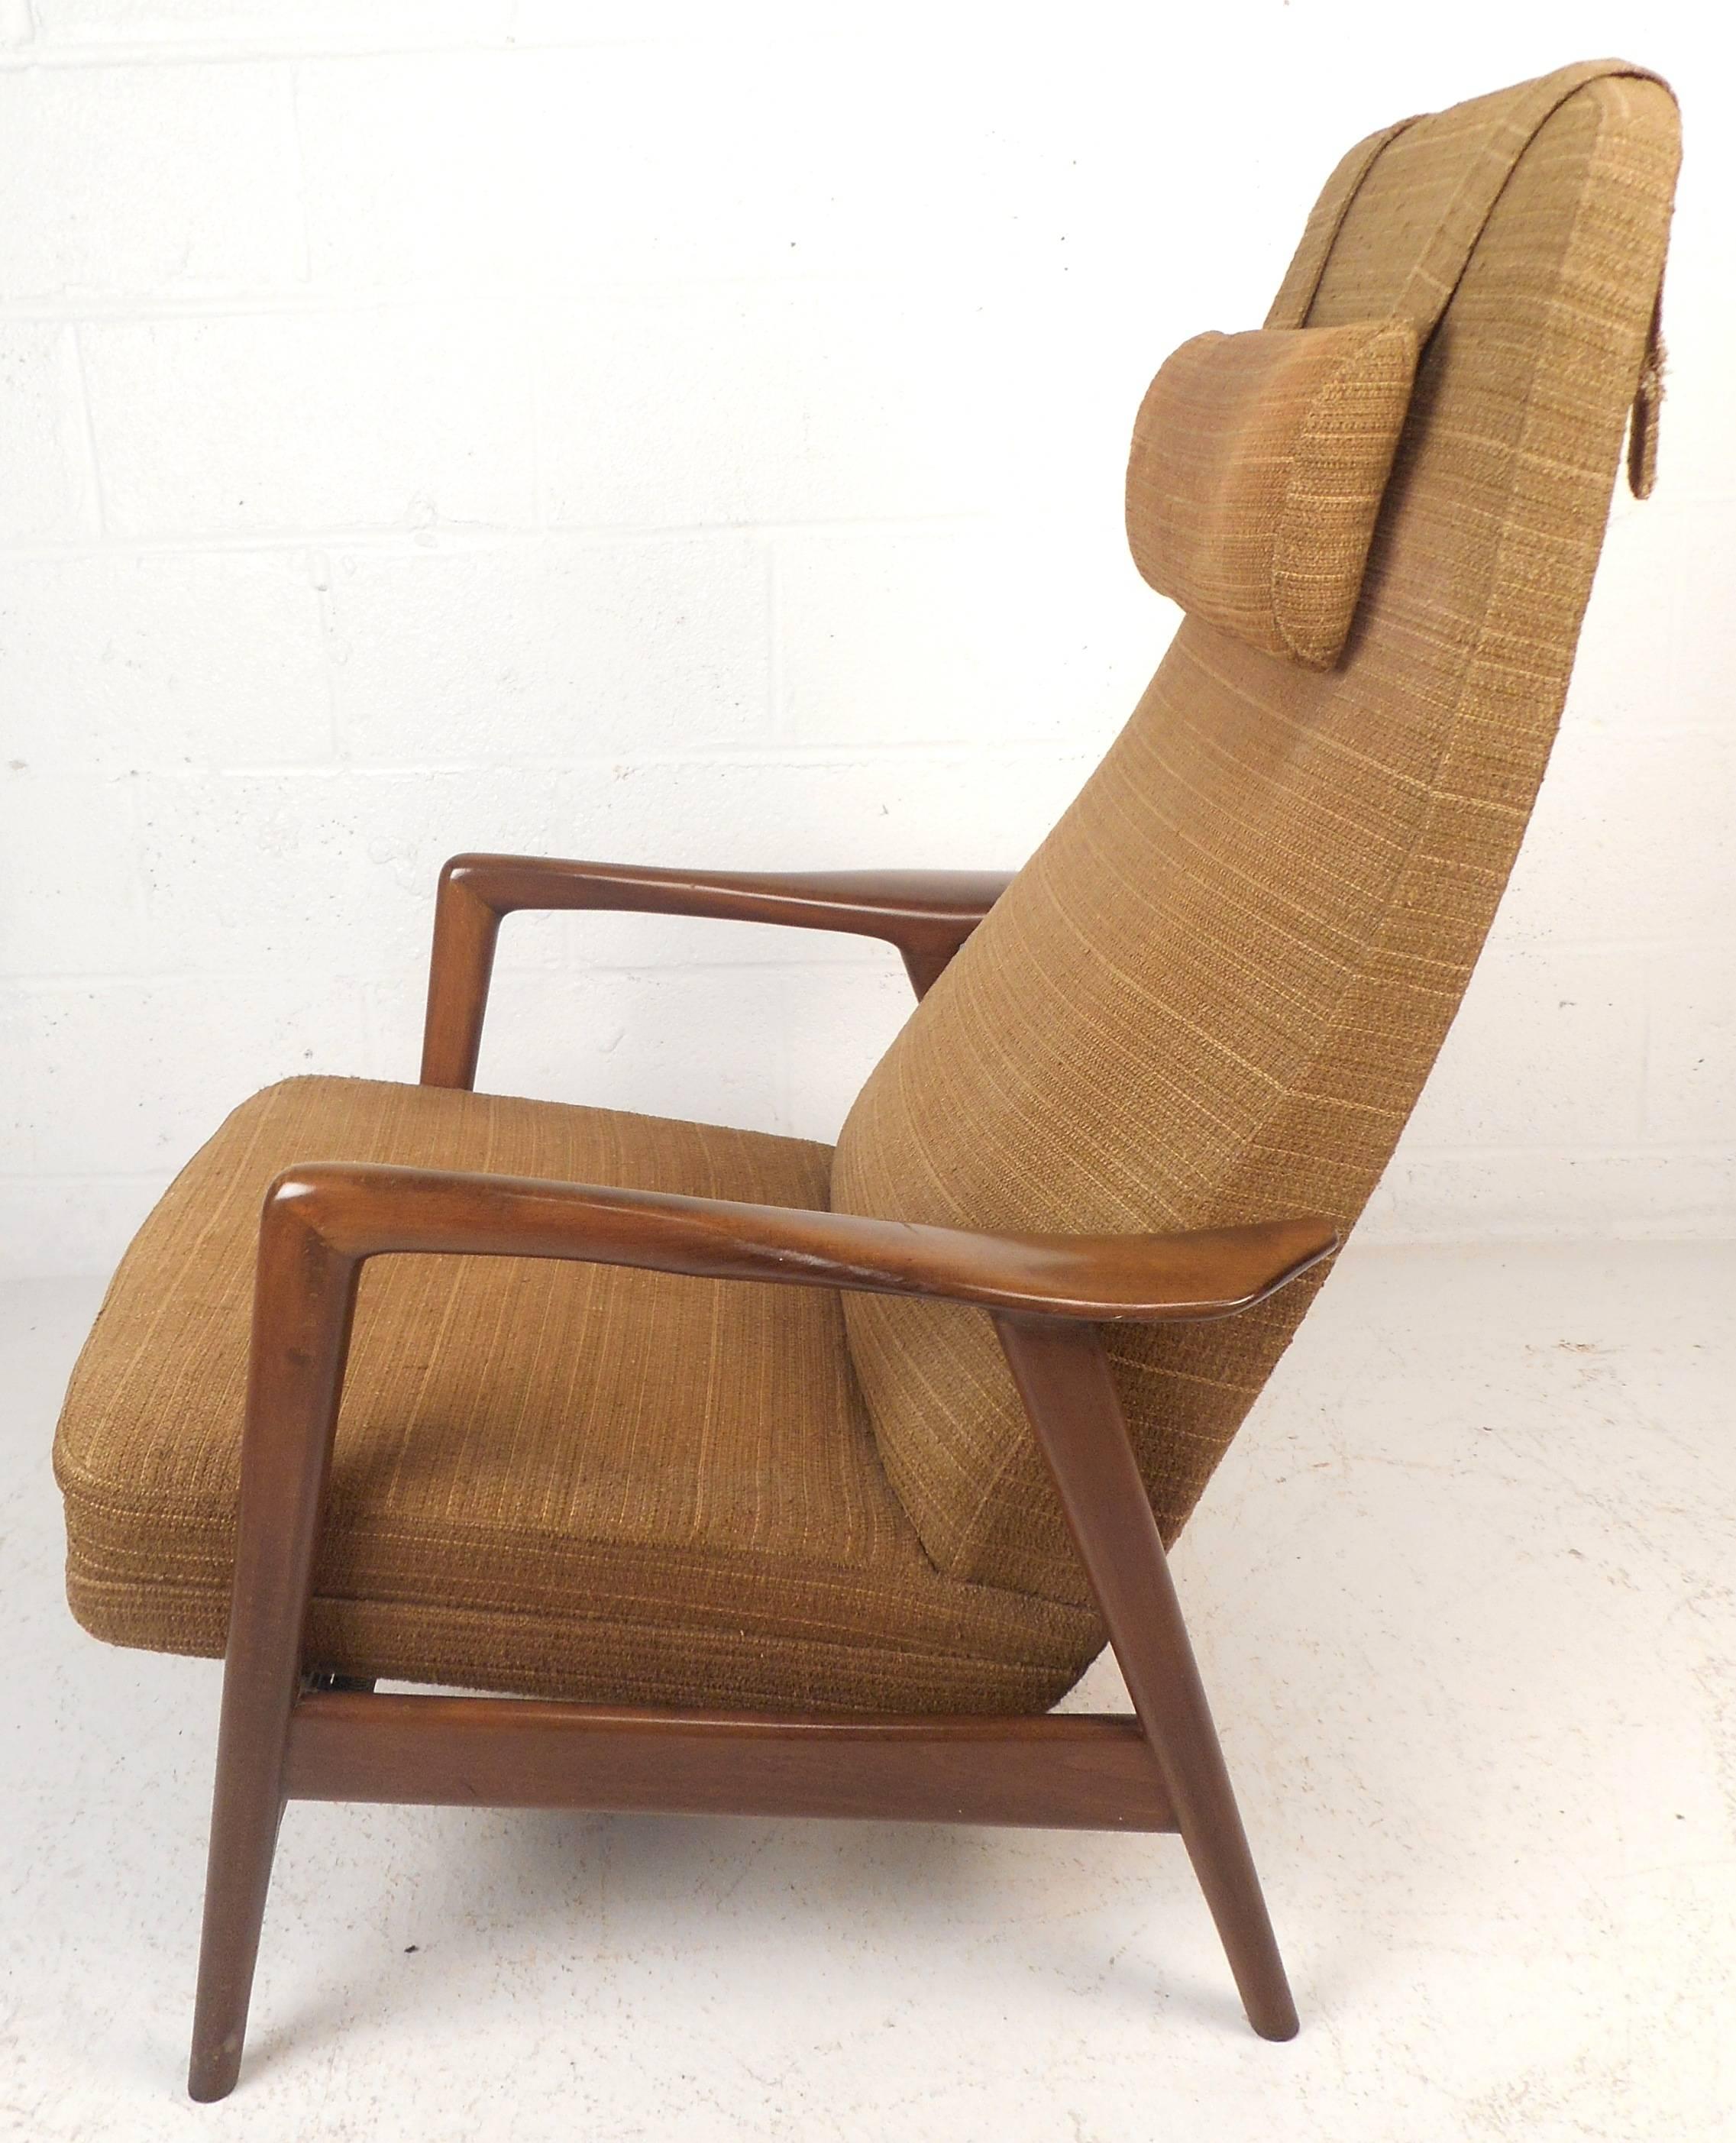 L'impressionnante chaise longue vintage moderne est dotée d'un cadre en noyer massif, d'un dossier haut et de coussins épais et rembourrés. Le design épuré avec ses accoudoirs sculptés et ses pieds angulaires s'incline commodément pour assurer un